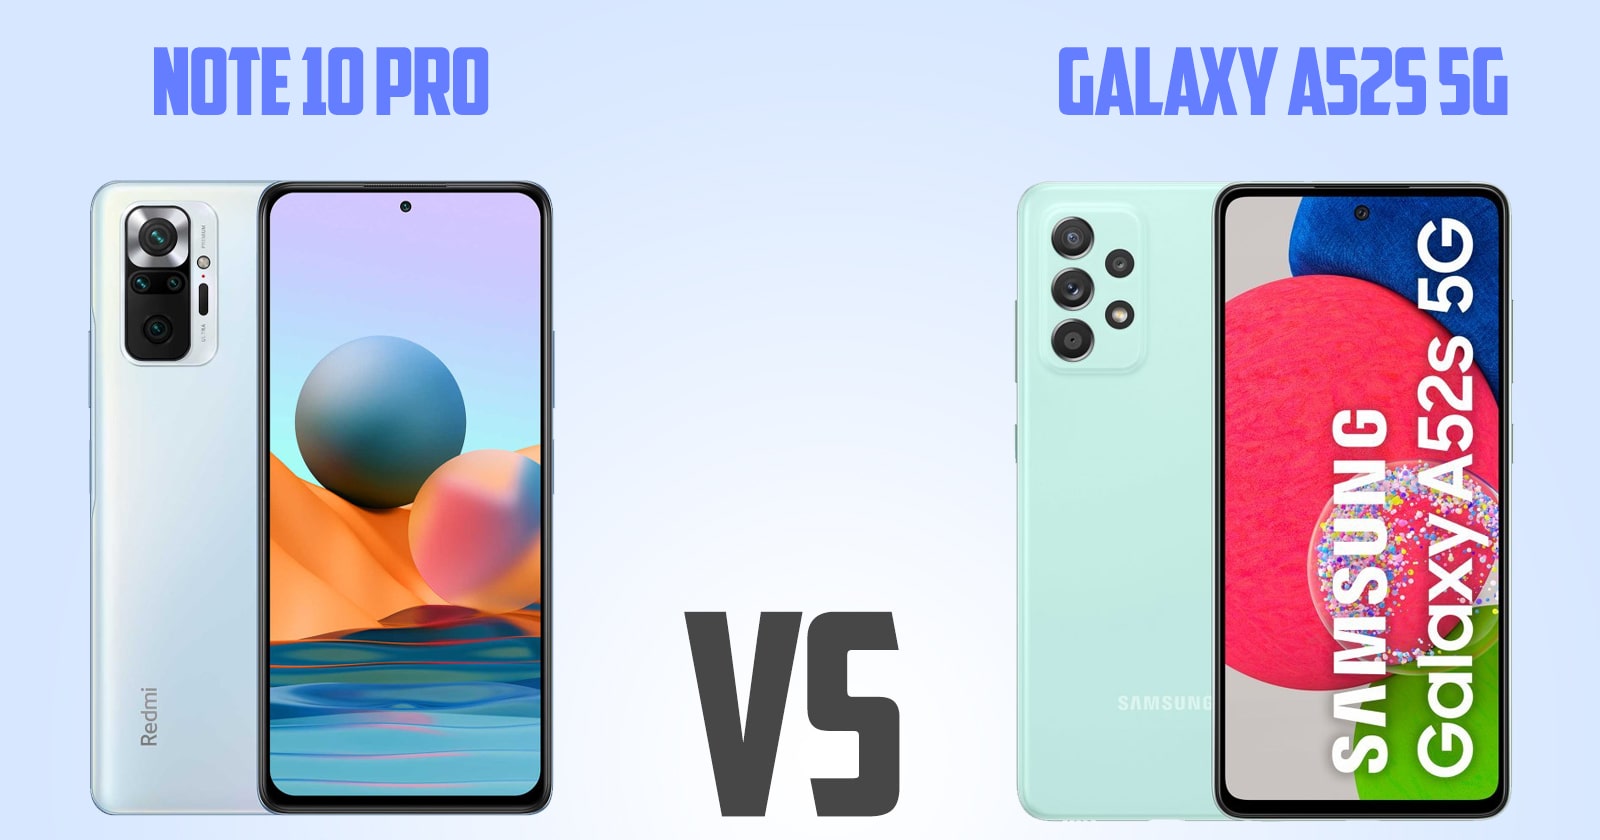 Redmi note 10 pro vs Samsung Galaxy A52s 5G